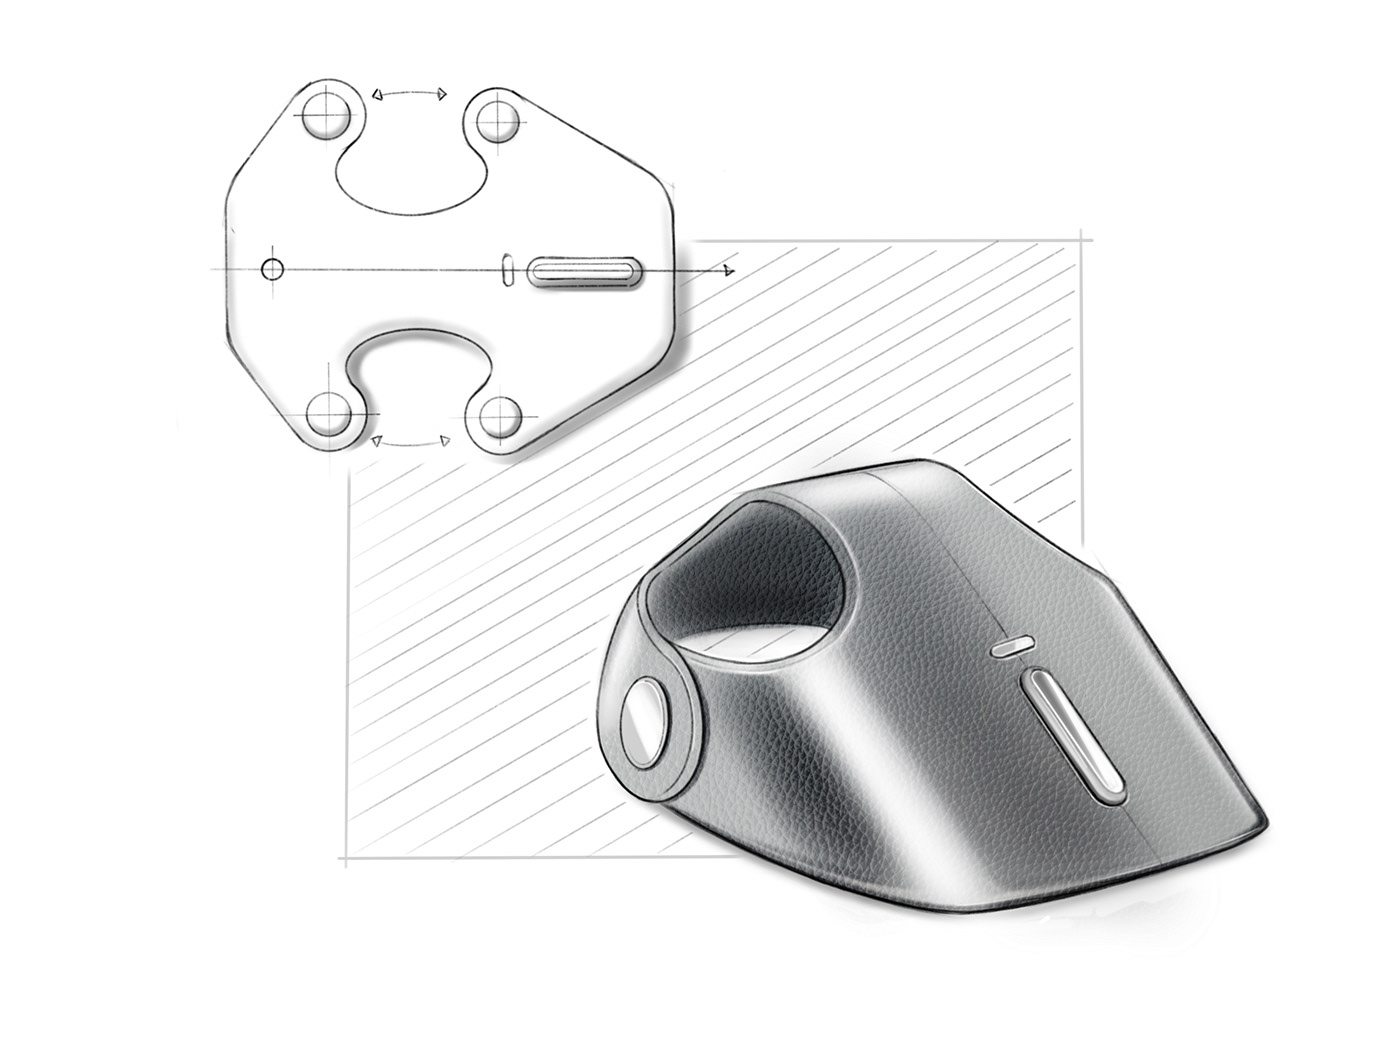 apple concept Electronics future generative industrial design  mouse speculative design desktop wireless